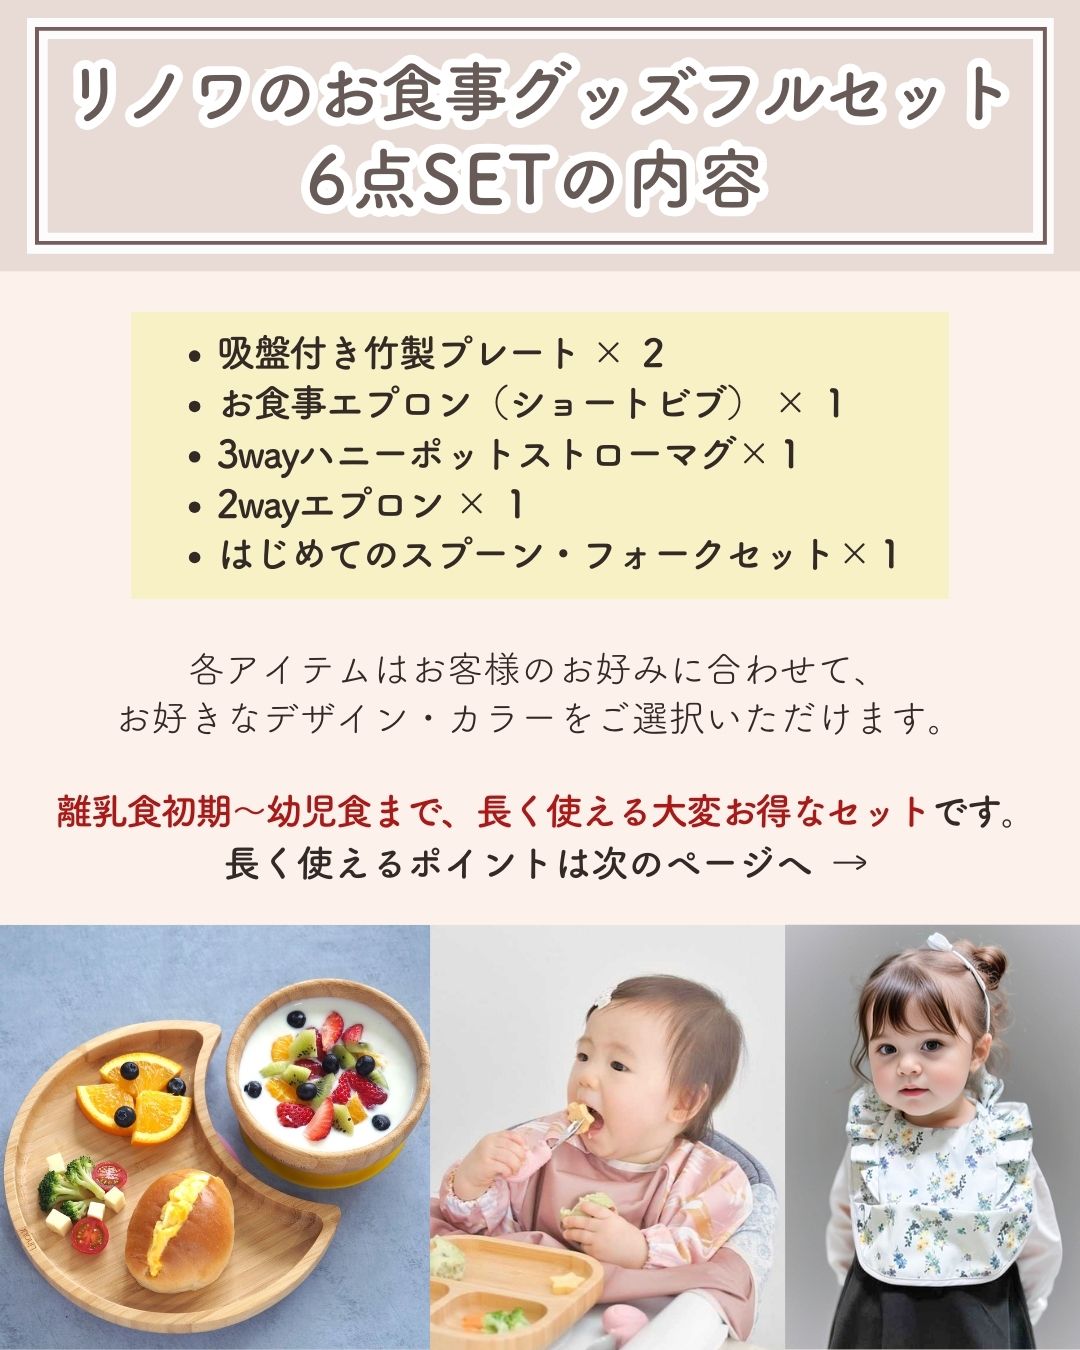 【6点SET】リノワお食事グッズフルセット